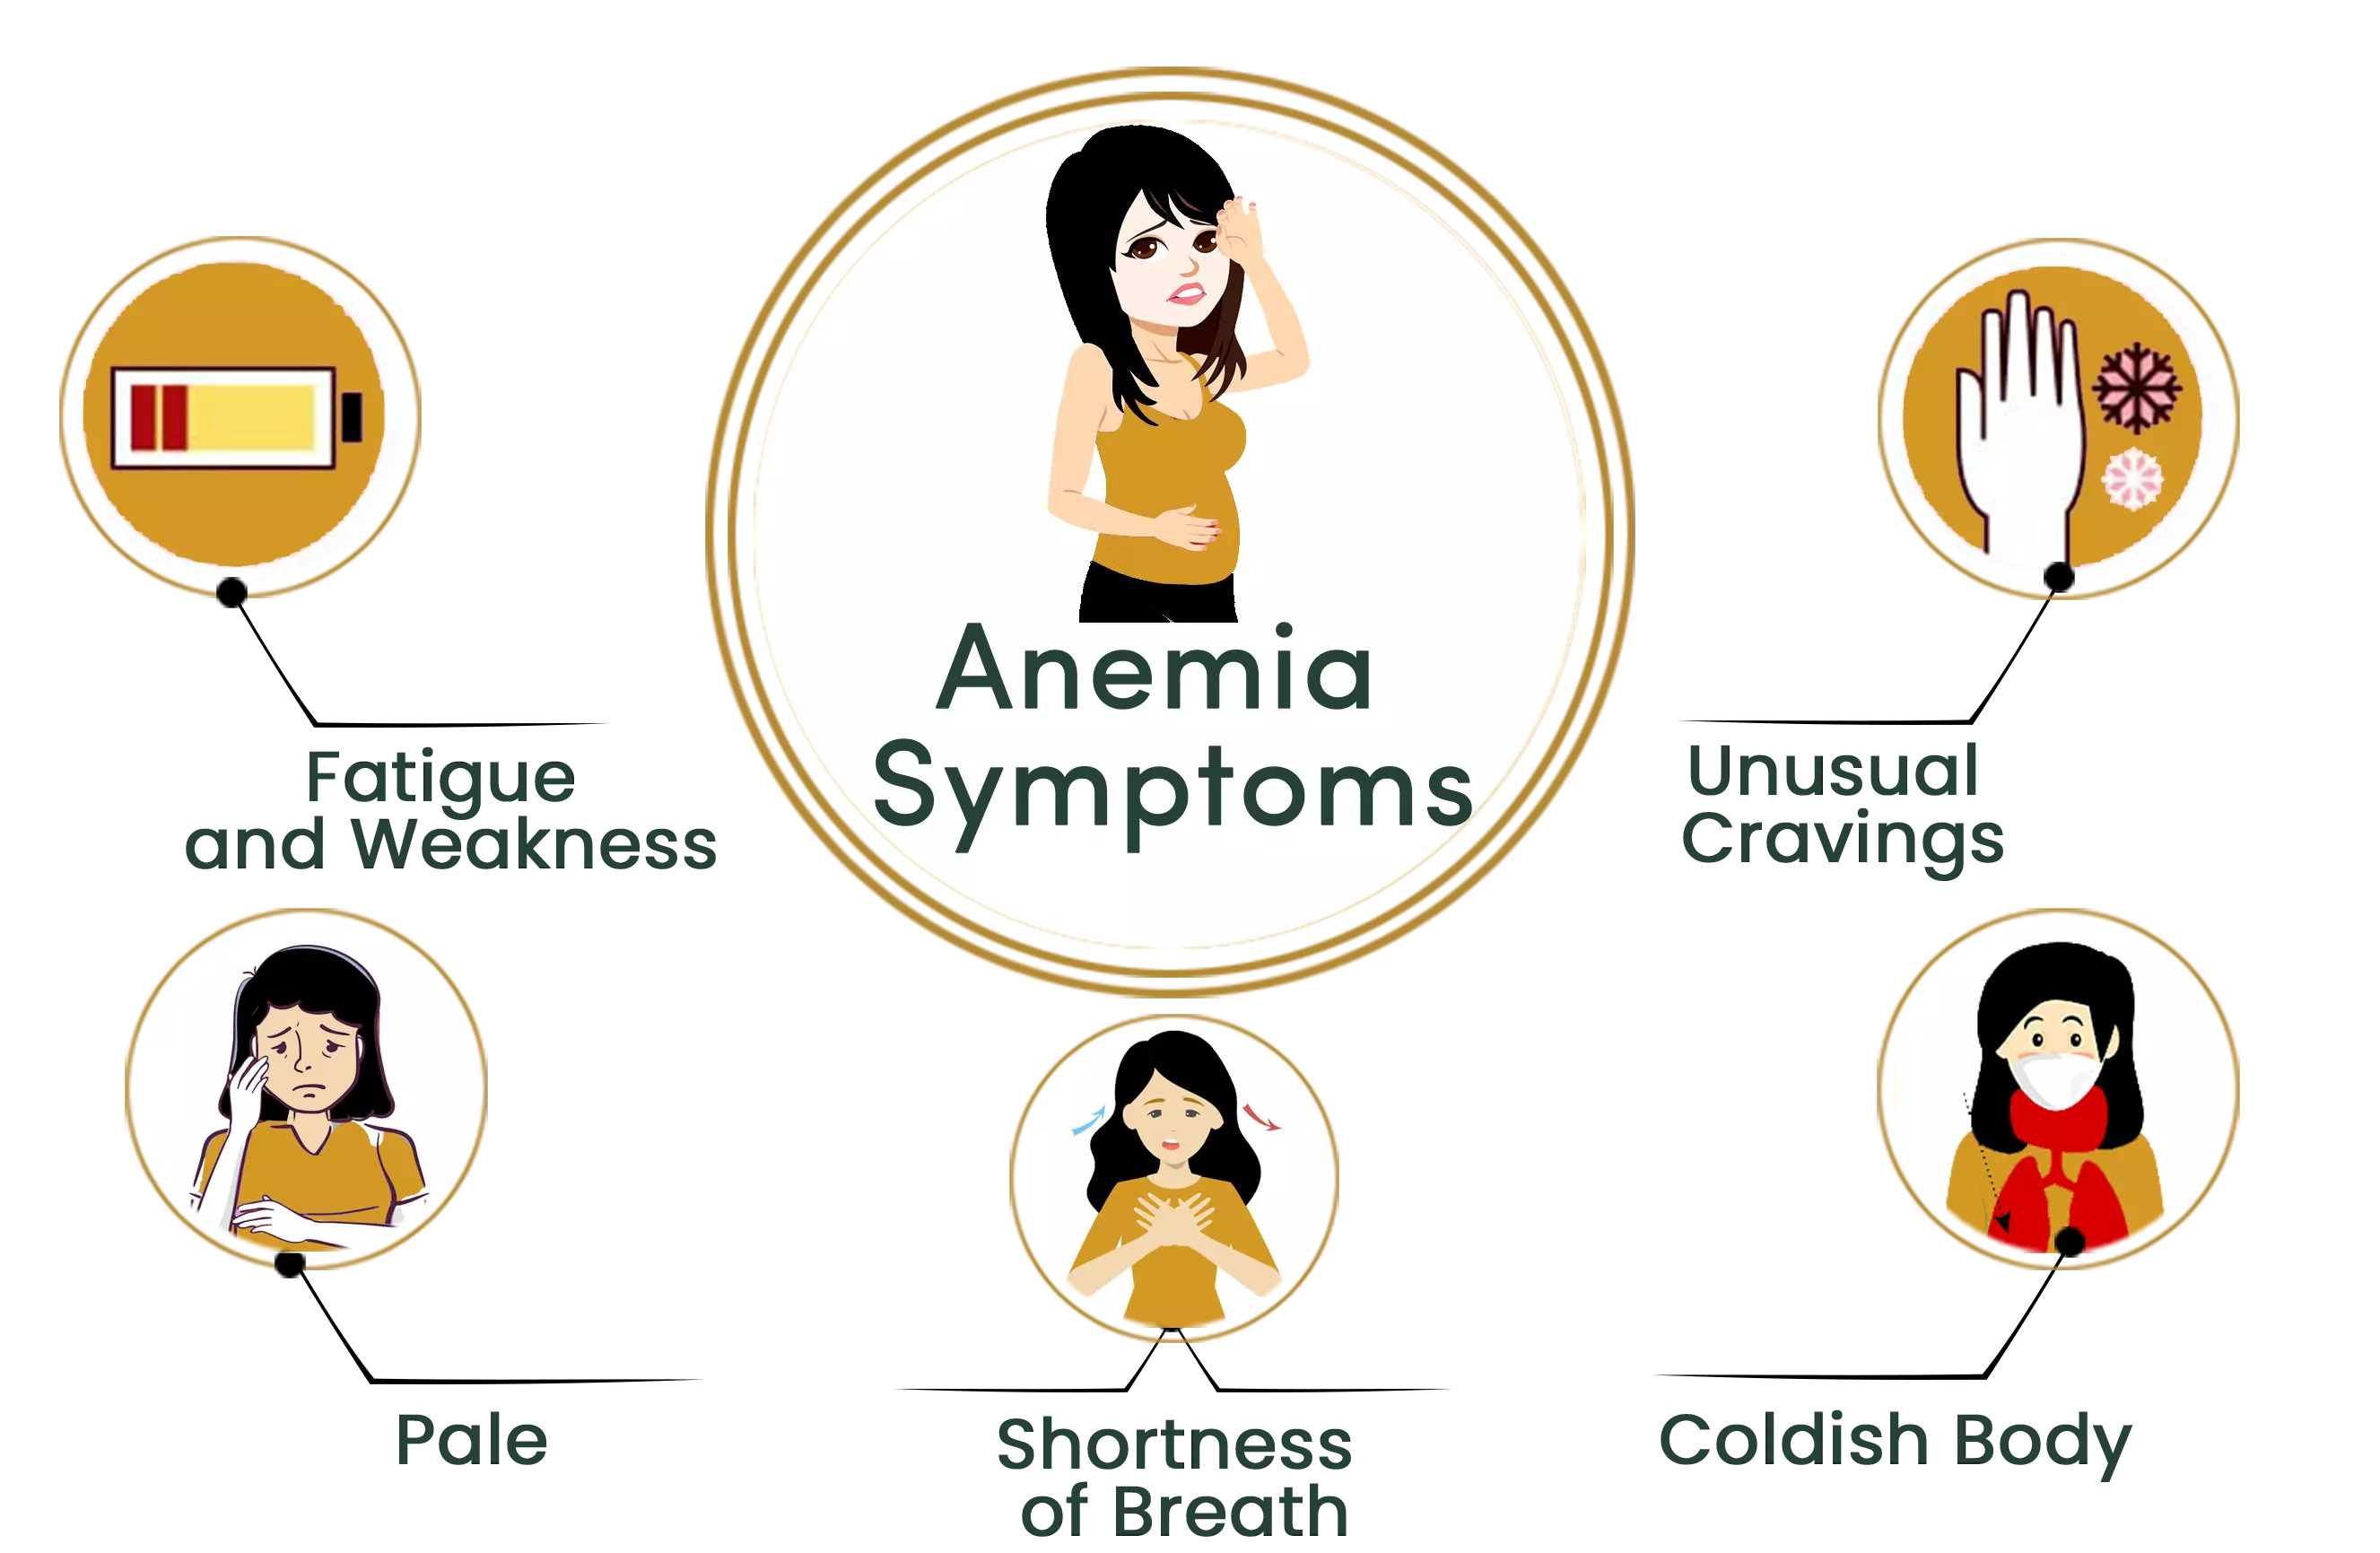 Anemia symptoms